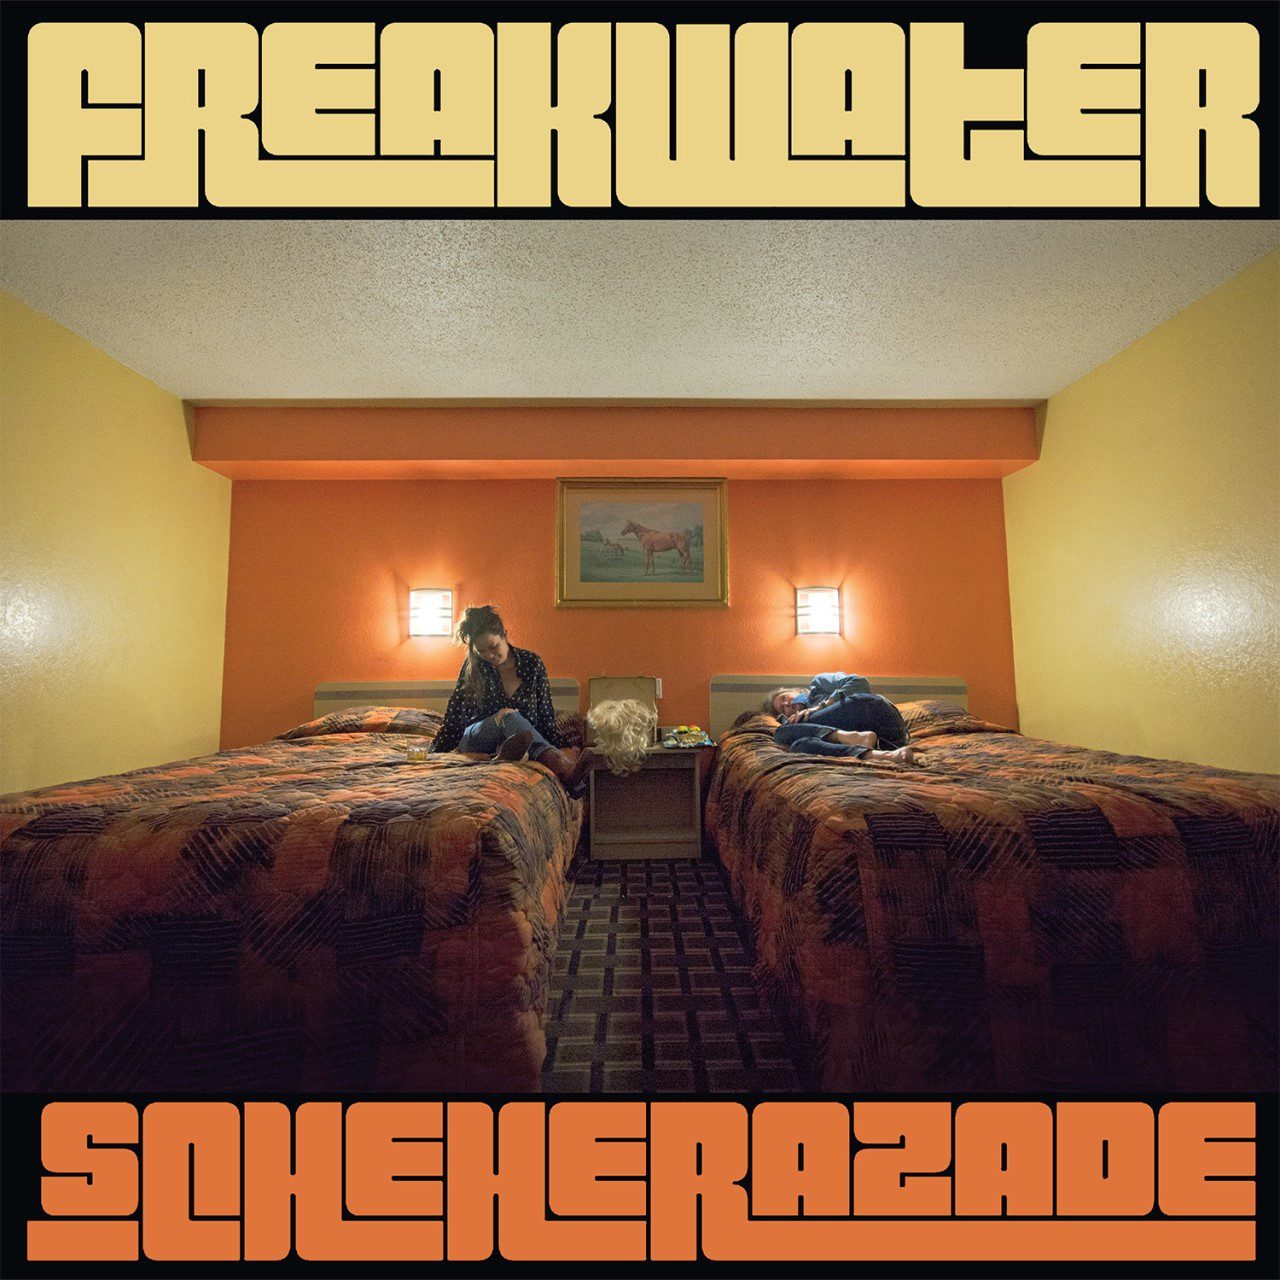 Freakwater - Scheherazade cover album